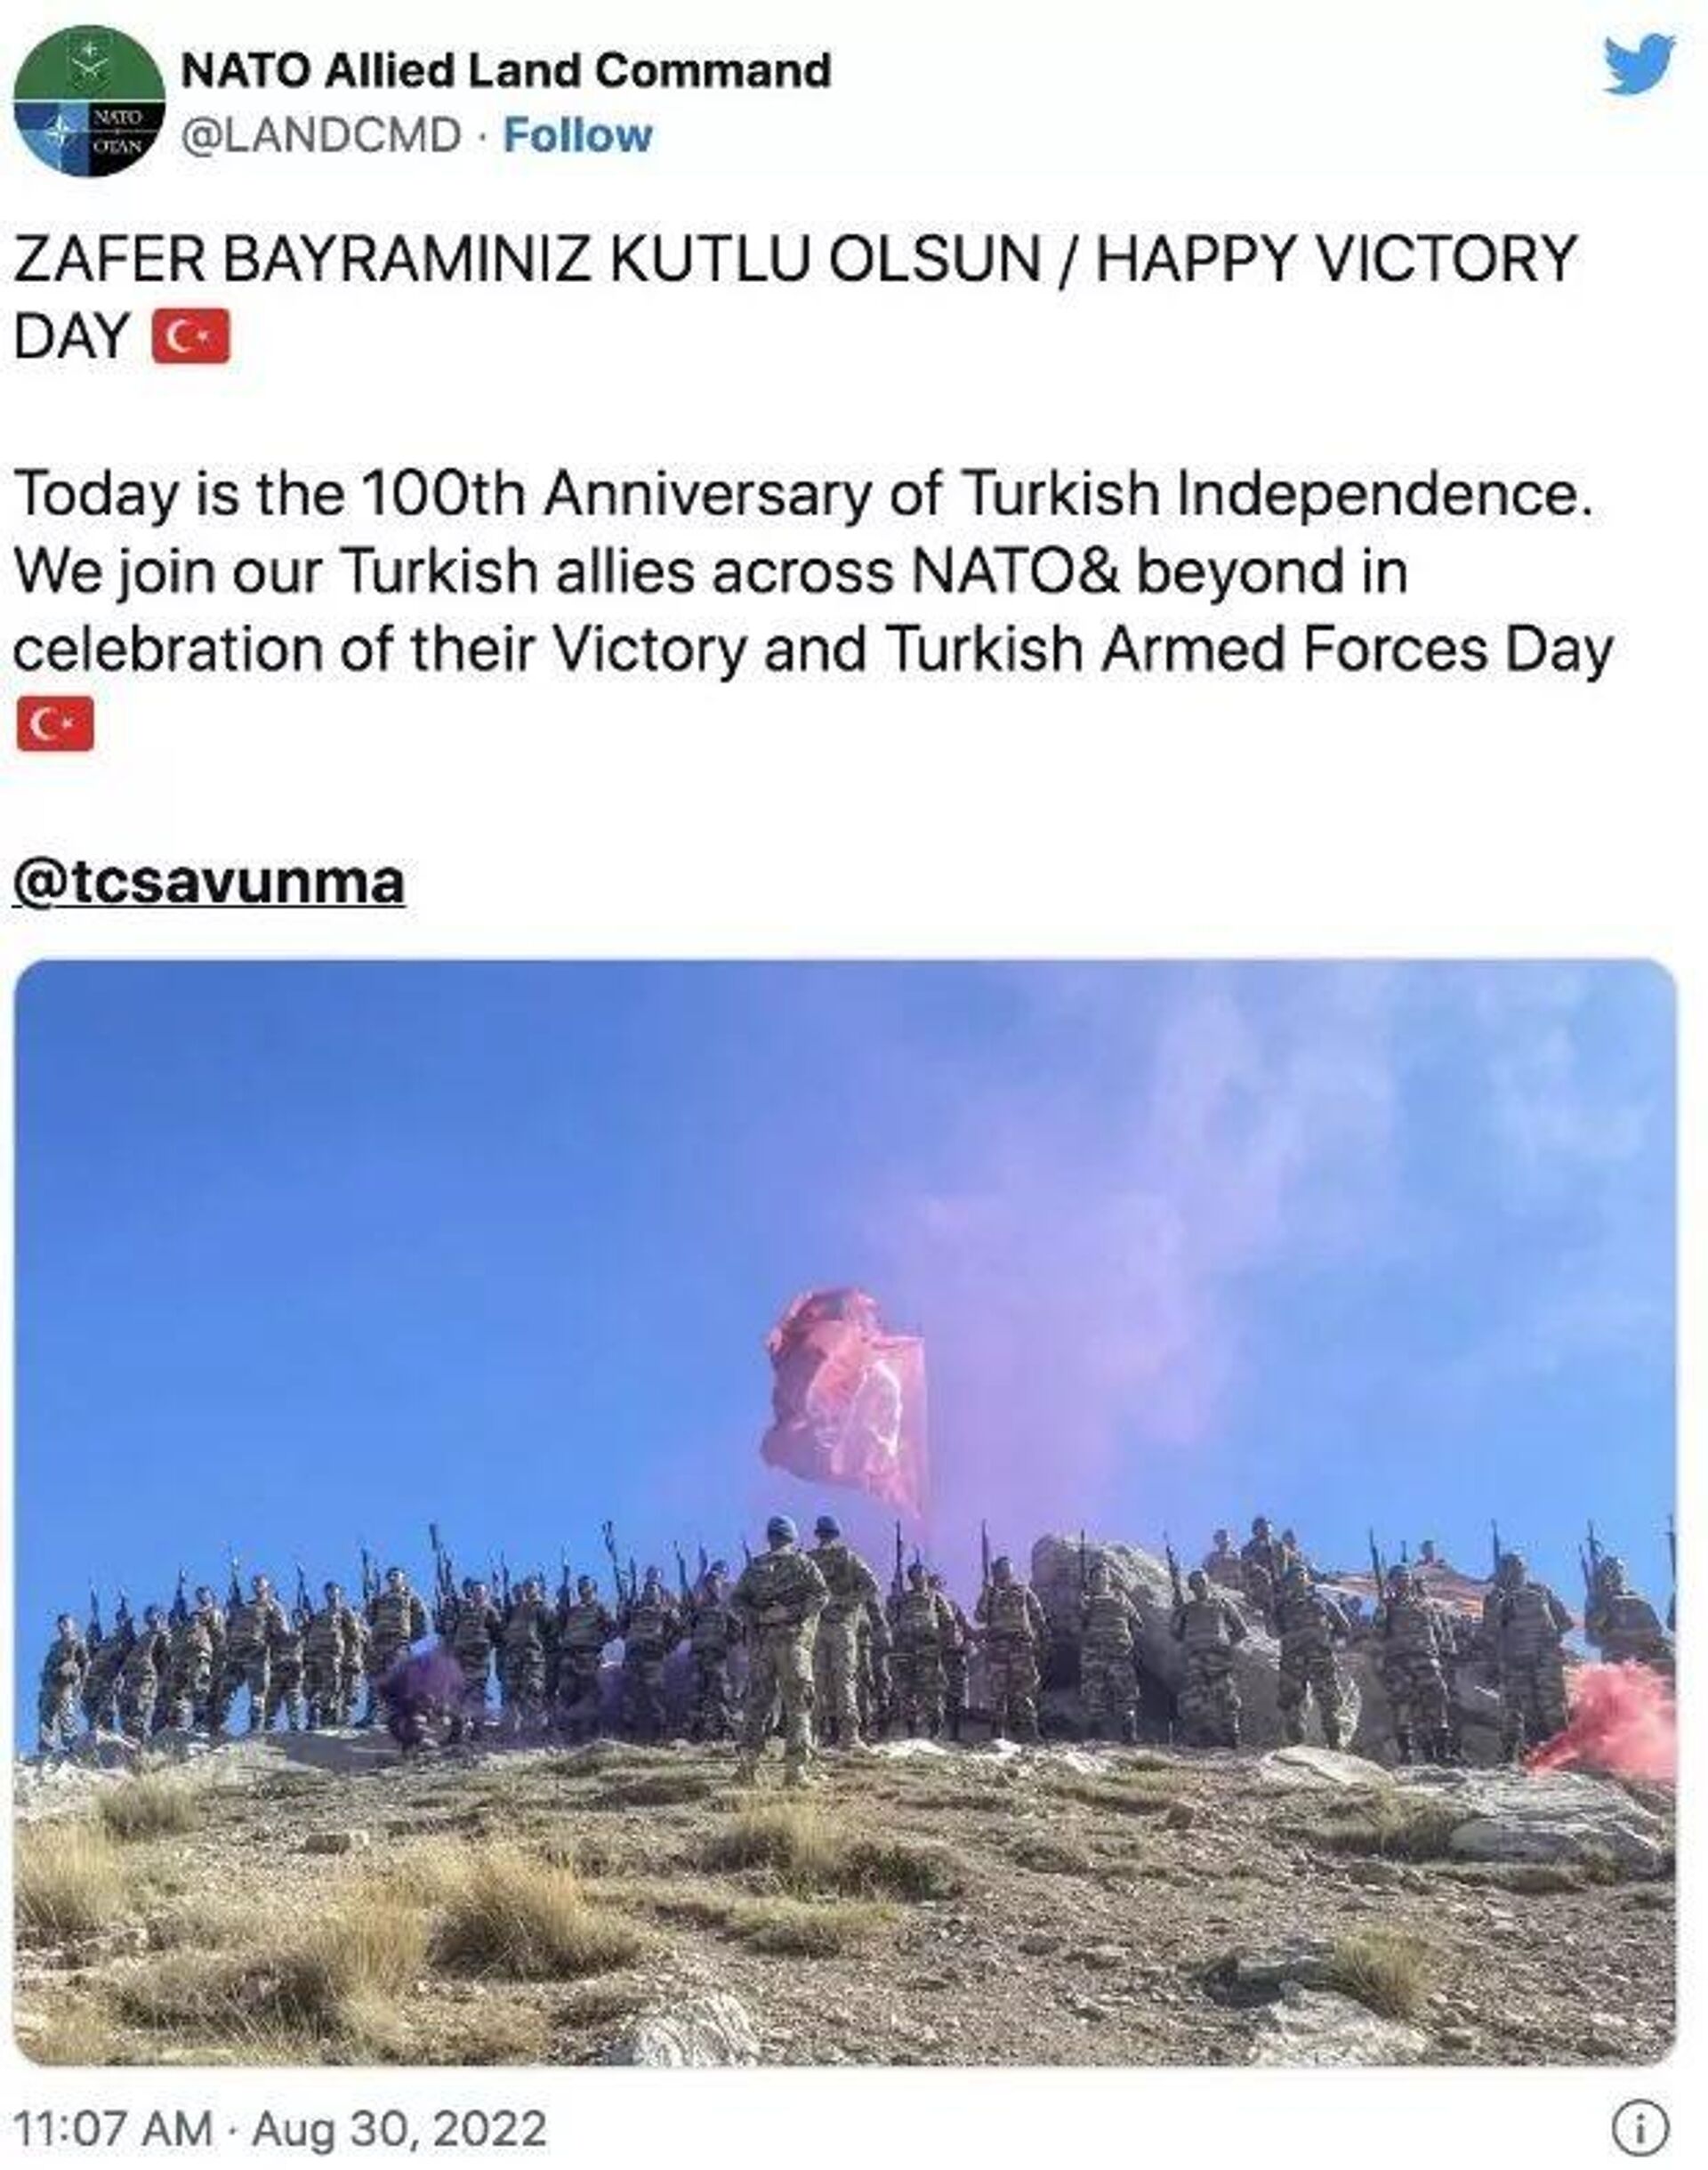 NATO Müttefik Kara Kuvvetleri Komutanlığı (LANDCOM), 30 Ağustos Zafer Bayramı'na ilişkin attığı tweet'ini sildi. - Sputnik Türkiye, 1920, 31.08.2022